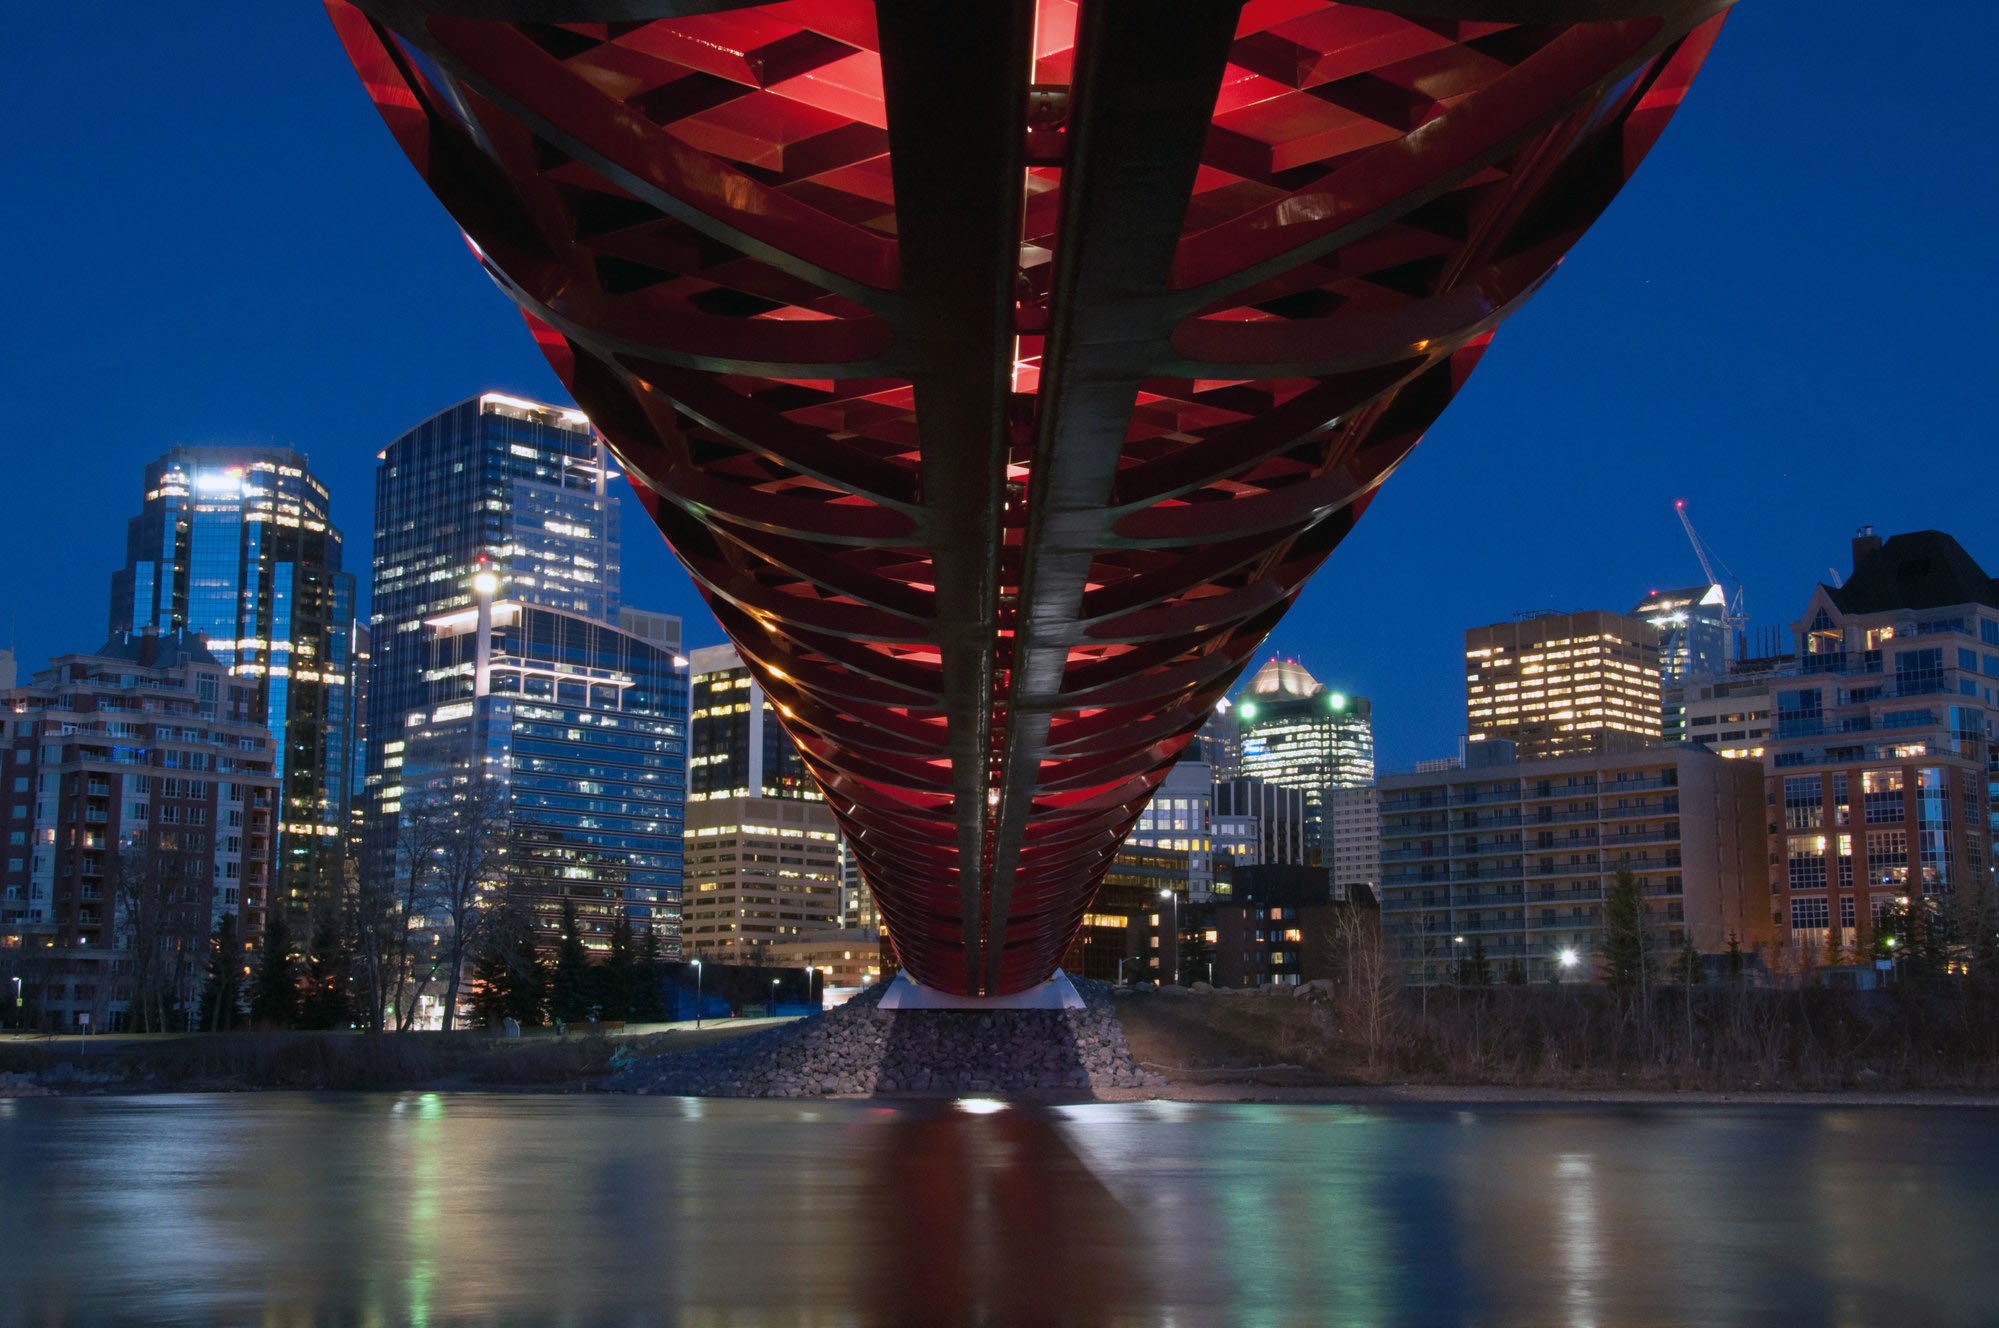 The Calgary Peace Bridge at night